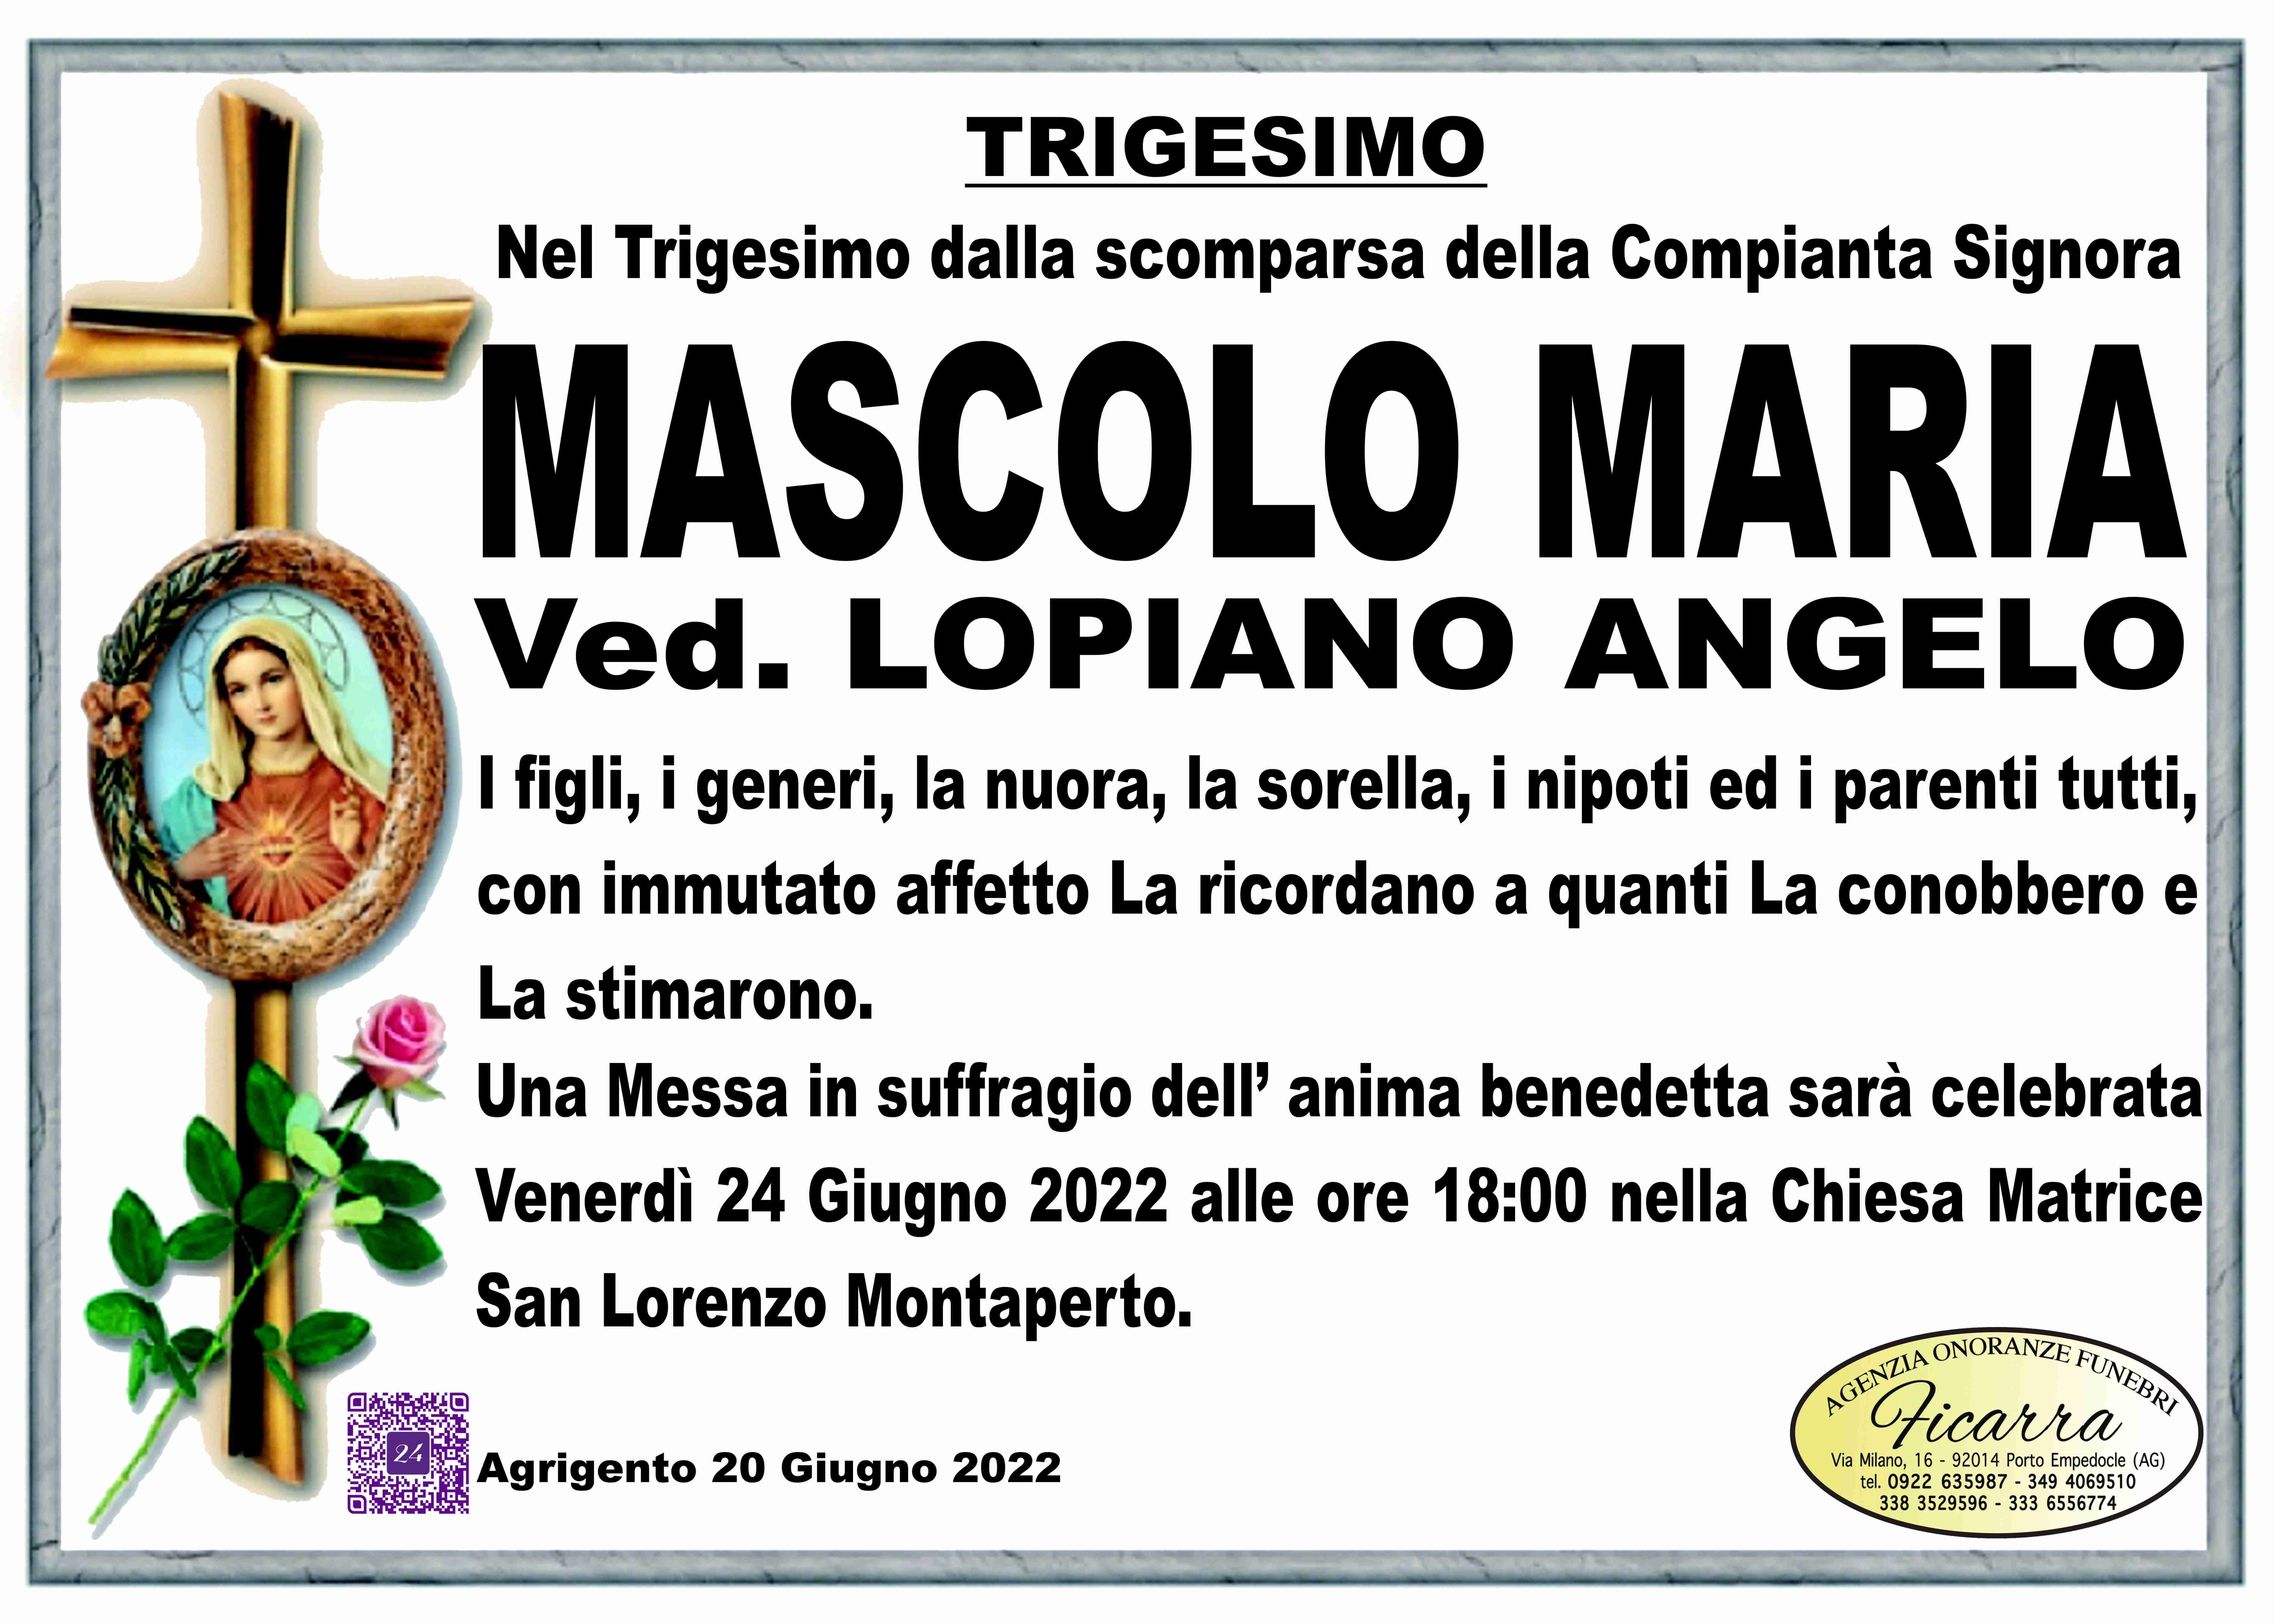 Maria Mascolo